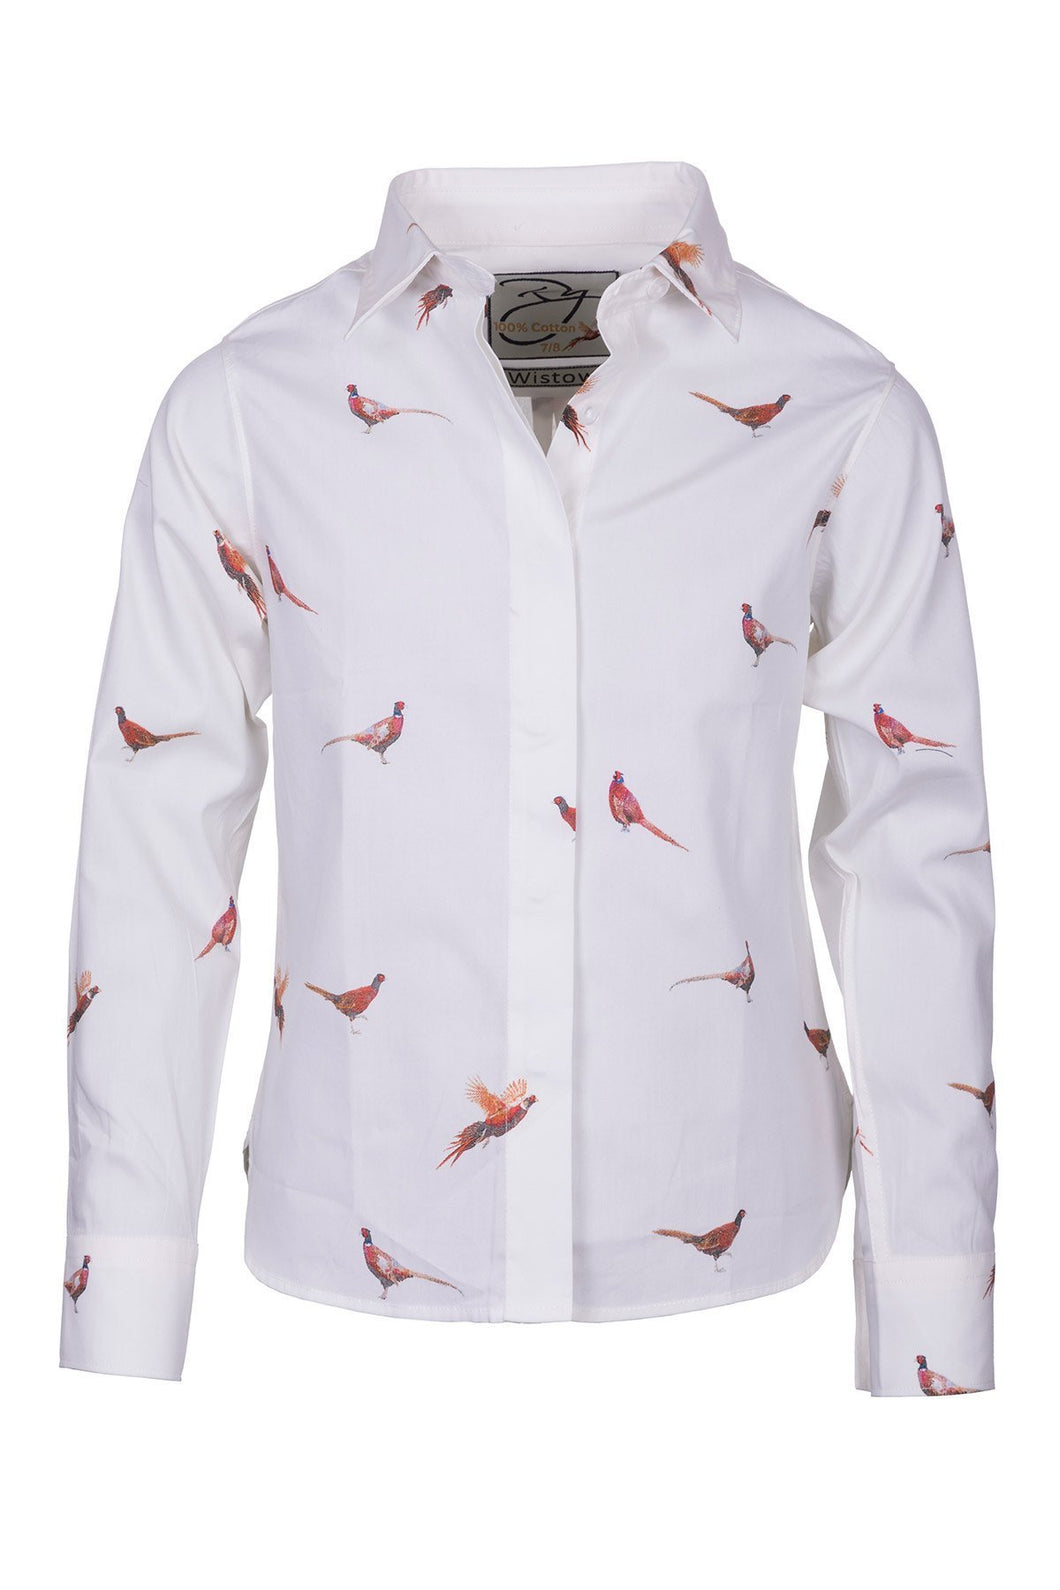 Pheasant White - Girls Wistow Printed Shirt